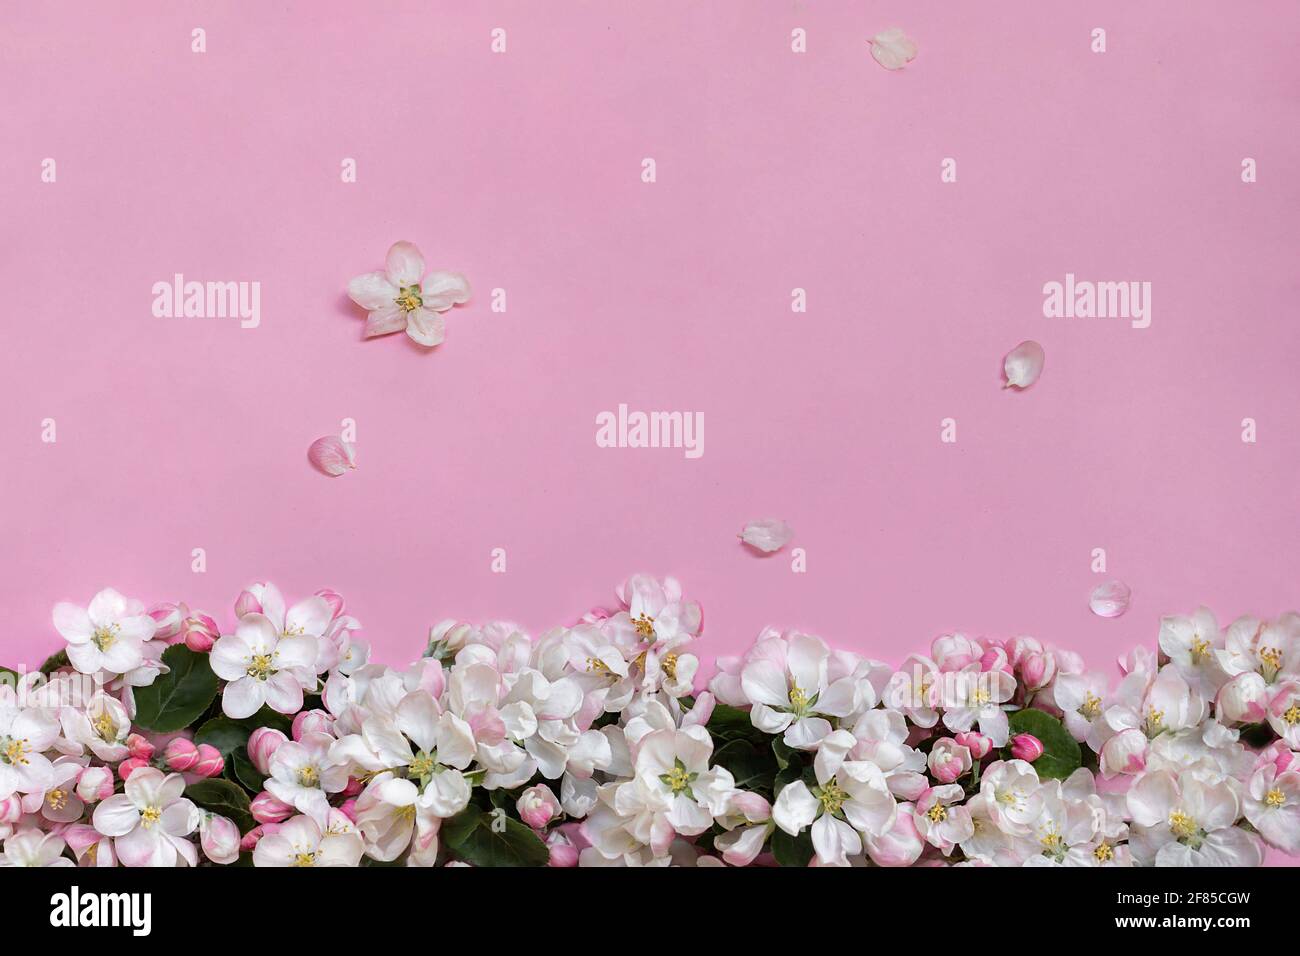 Apfelblüten auf rosa Hintergrund. Draufsicht. Nahaufnahme. Leerer Ort für Grüße, Einladungen, inspirierende Texte, schöne Zitate oder positive Sprüche. Stockfoto